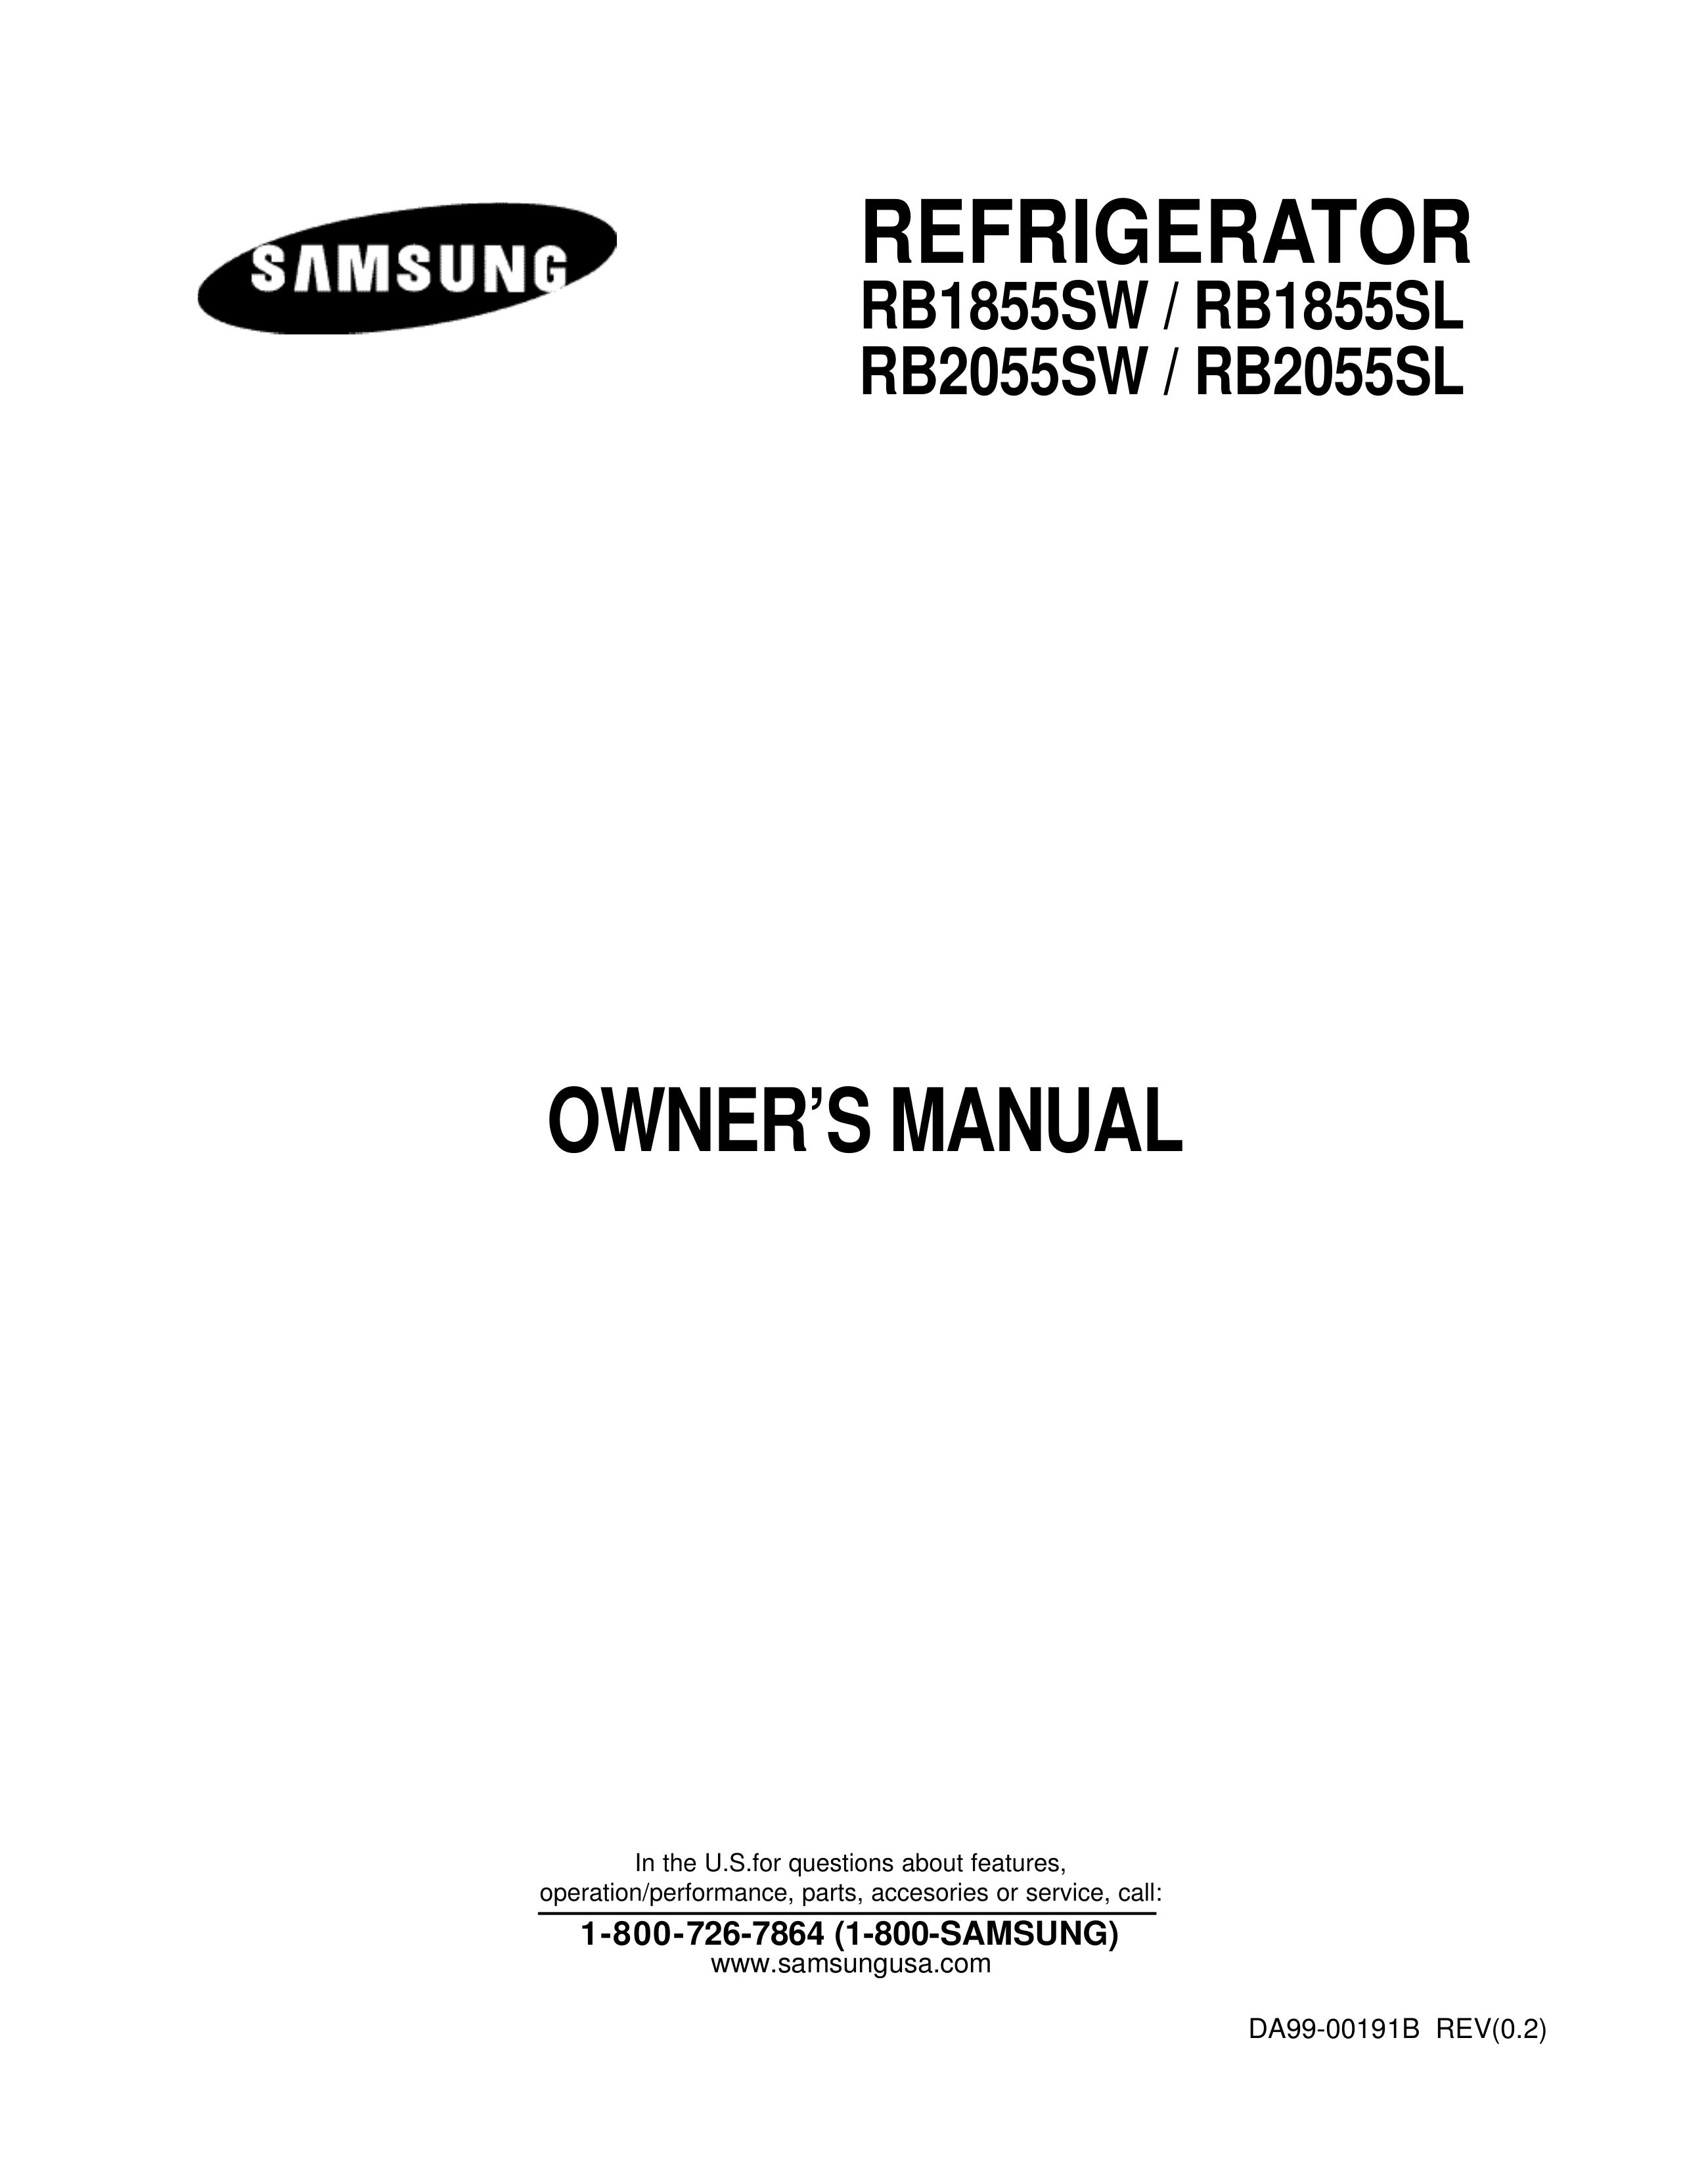 Samsung RB1855SL Refrigerator User Manual